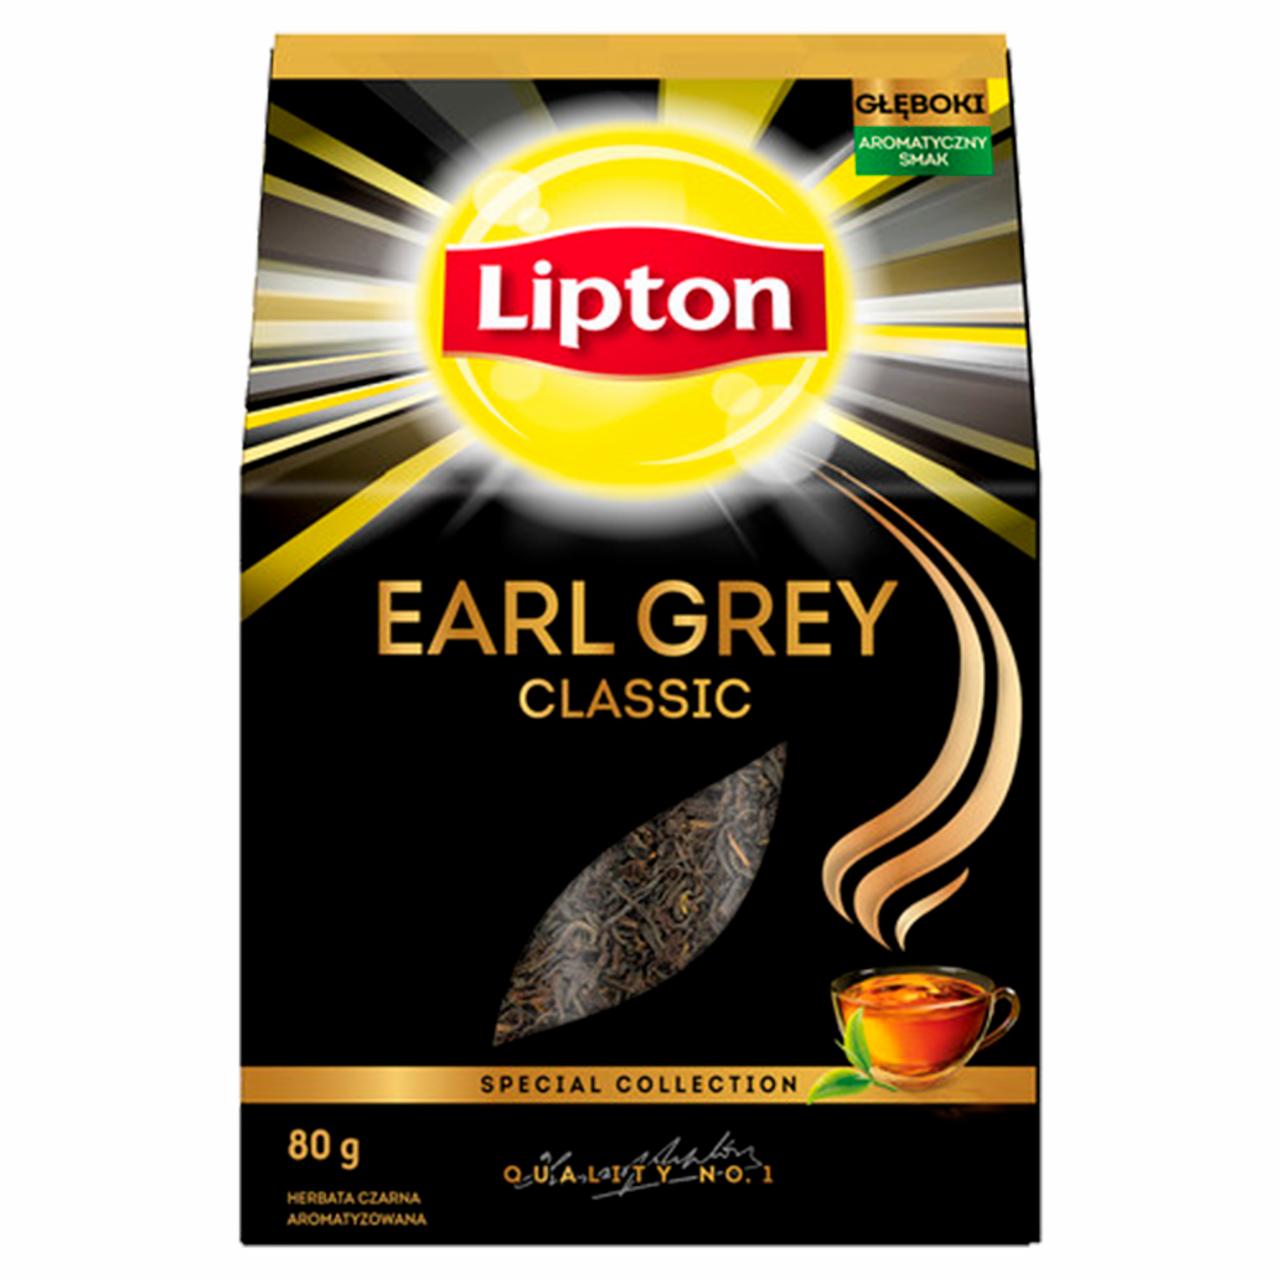 Zdjęcia - Lipton Earl Grey Classic Herbata czarna aromatyzowana 80 g